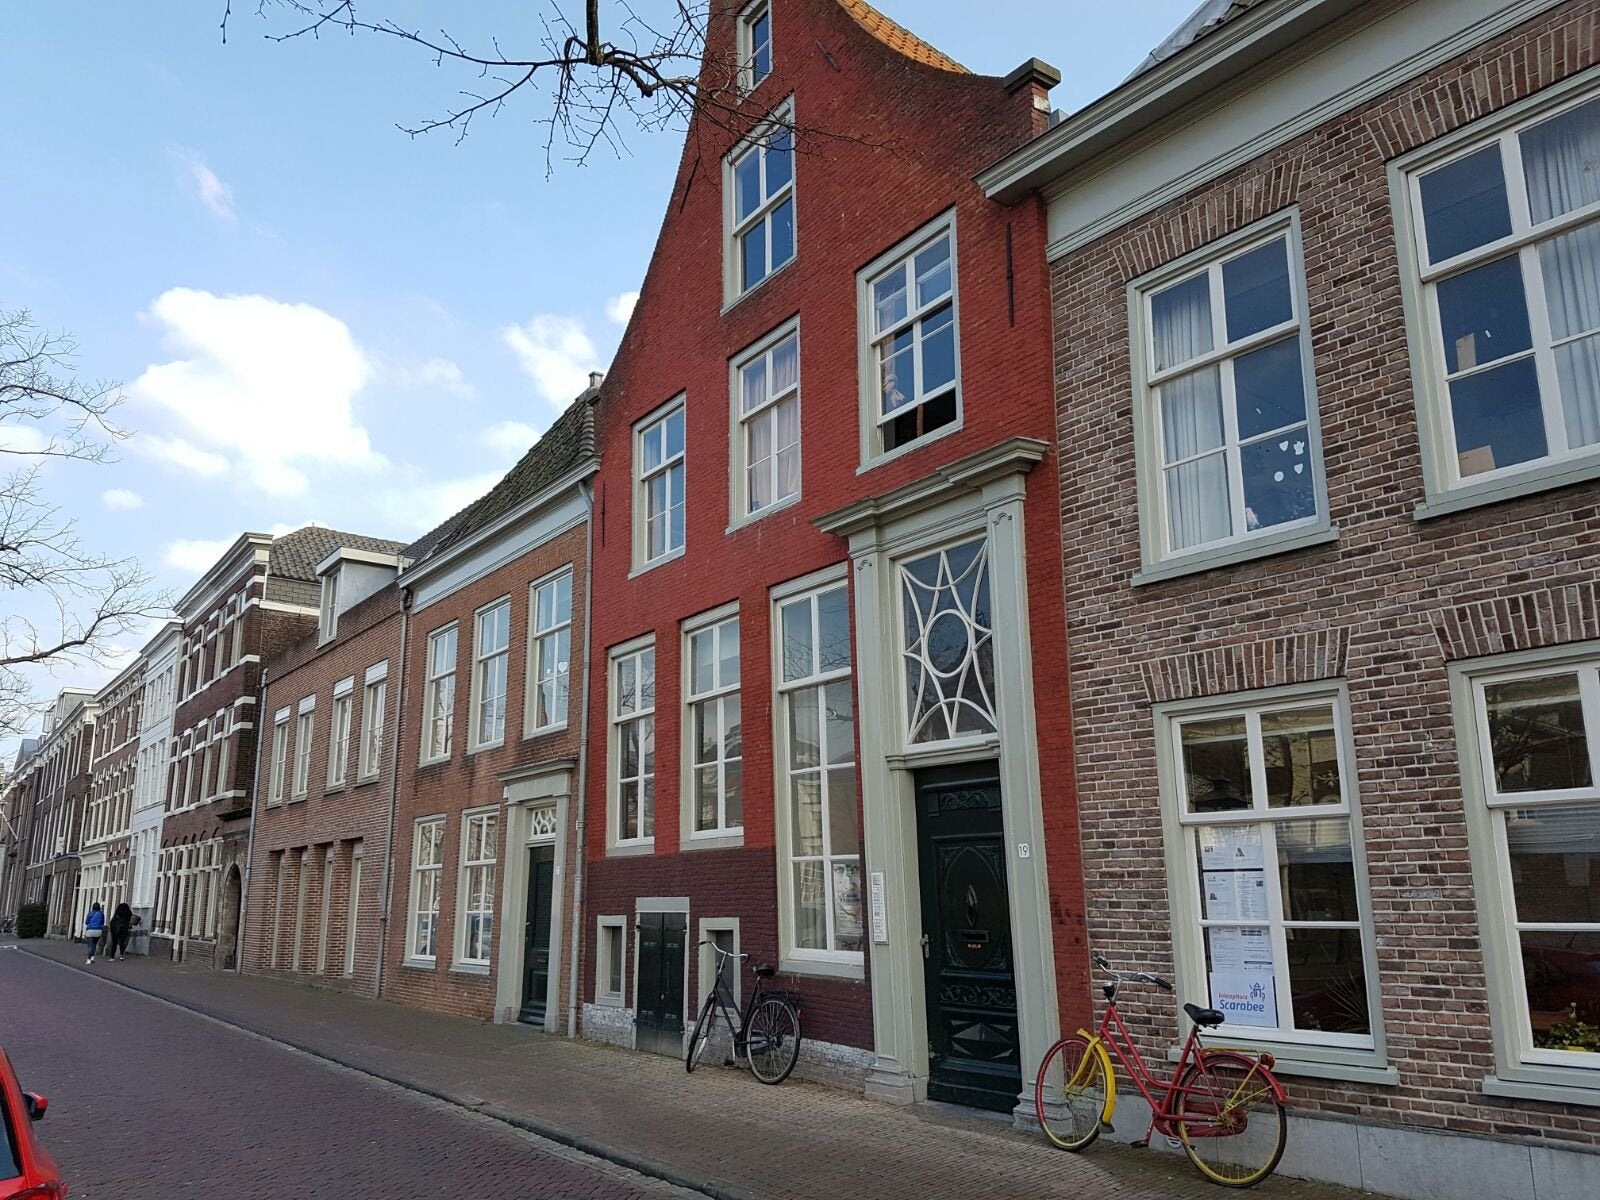 Bekijk foto 1/18 van apartment in Leiden